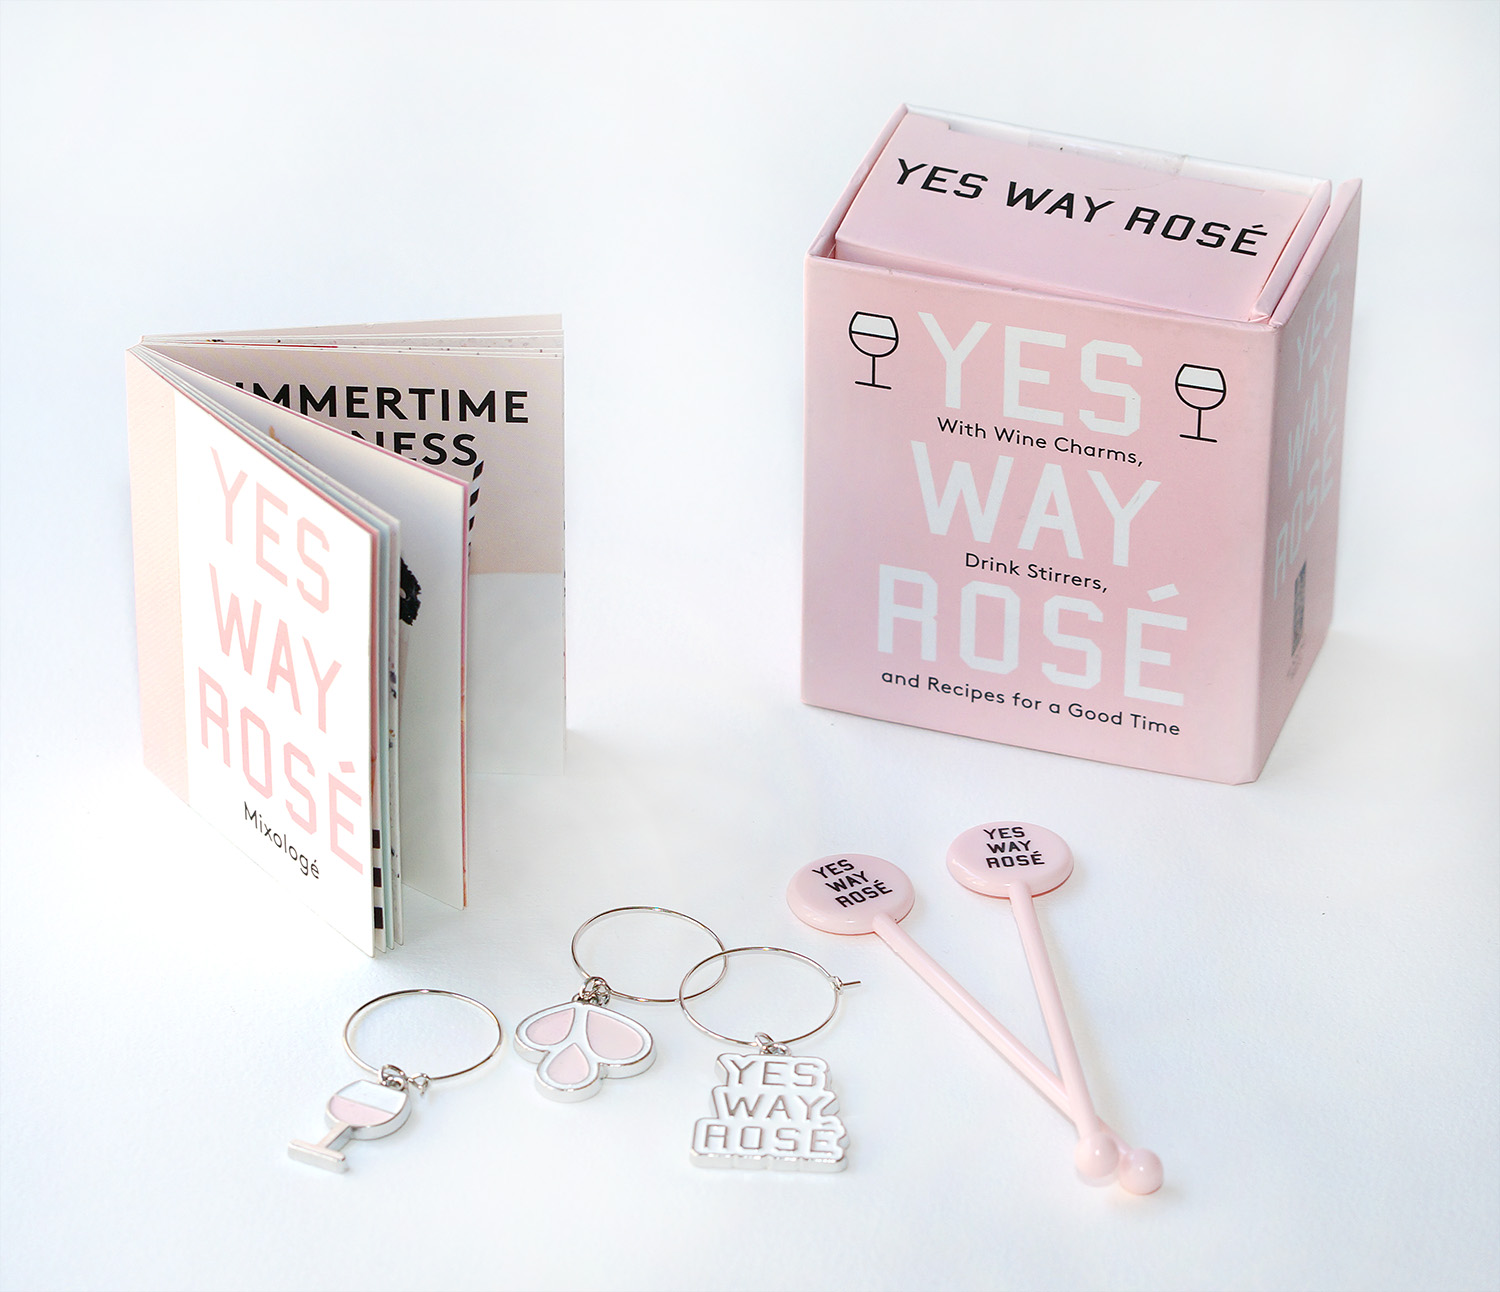  Yes Way Rose Mini Kit | Erica Blumenthal, Nikki Huganir 